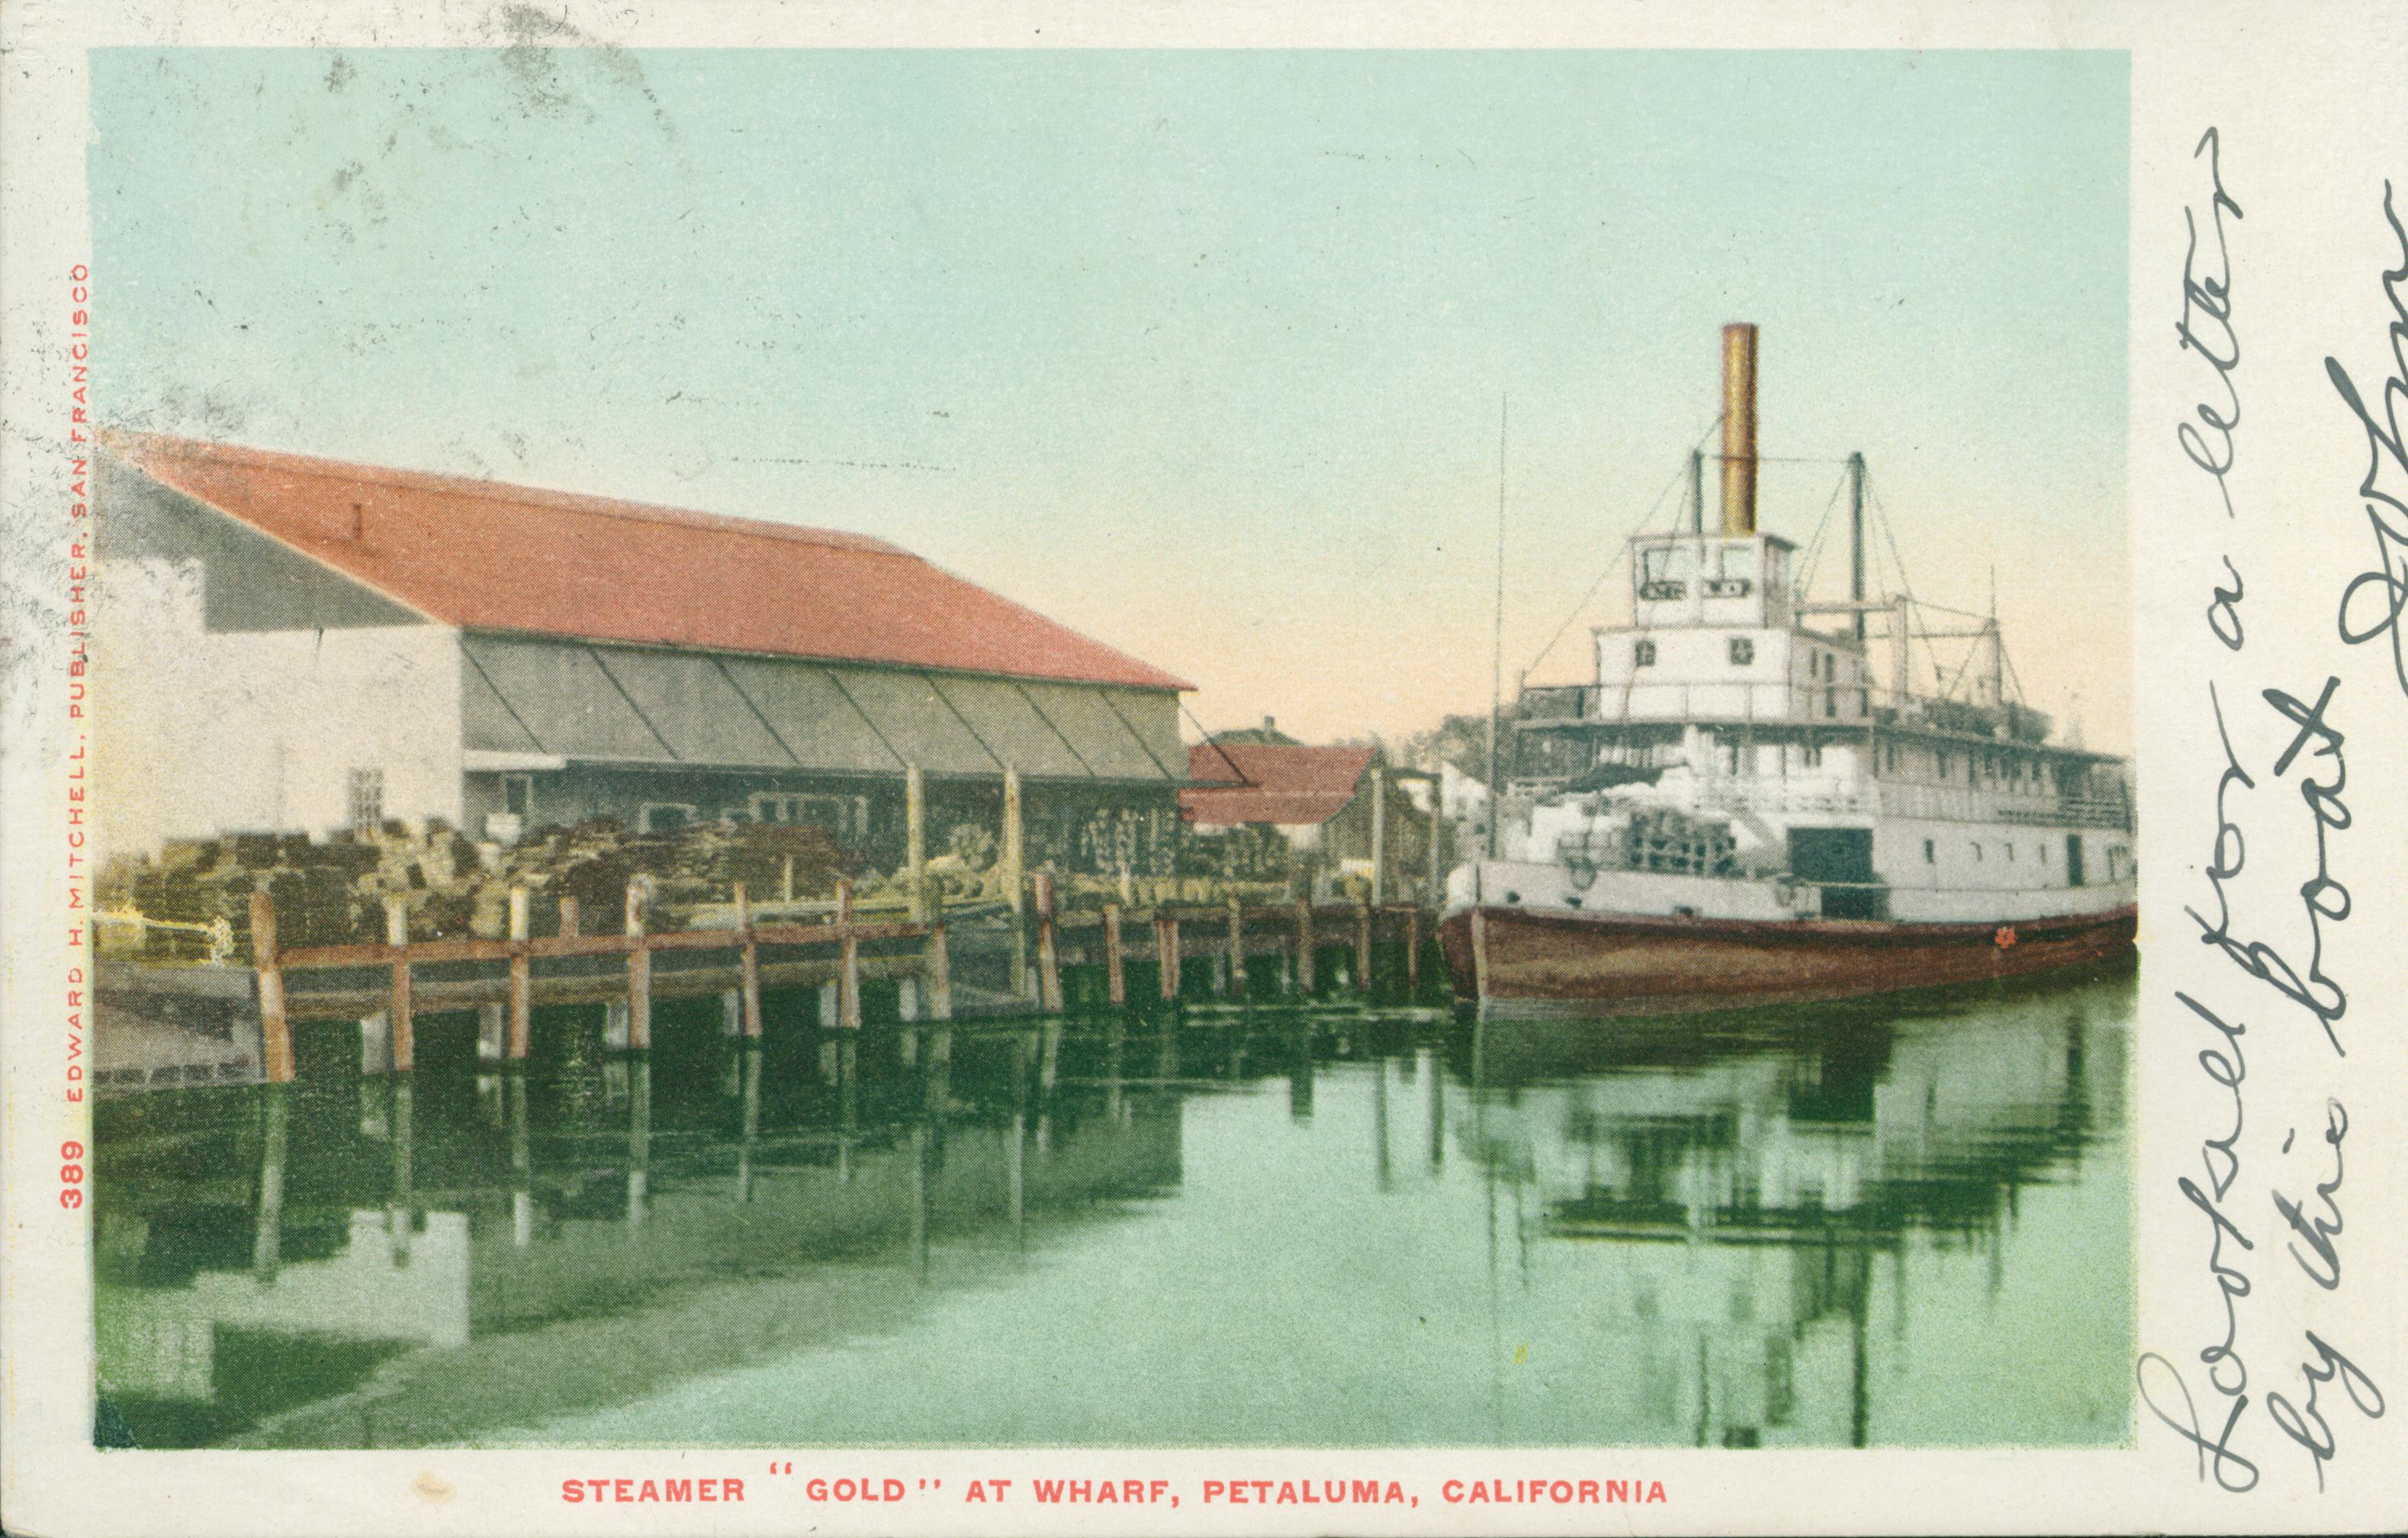 Shows a steamer at a wharf in Petaluma